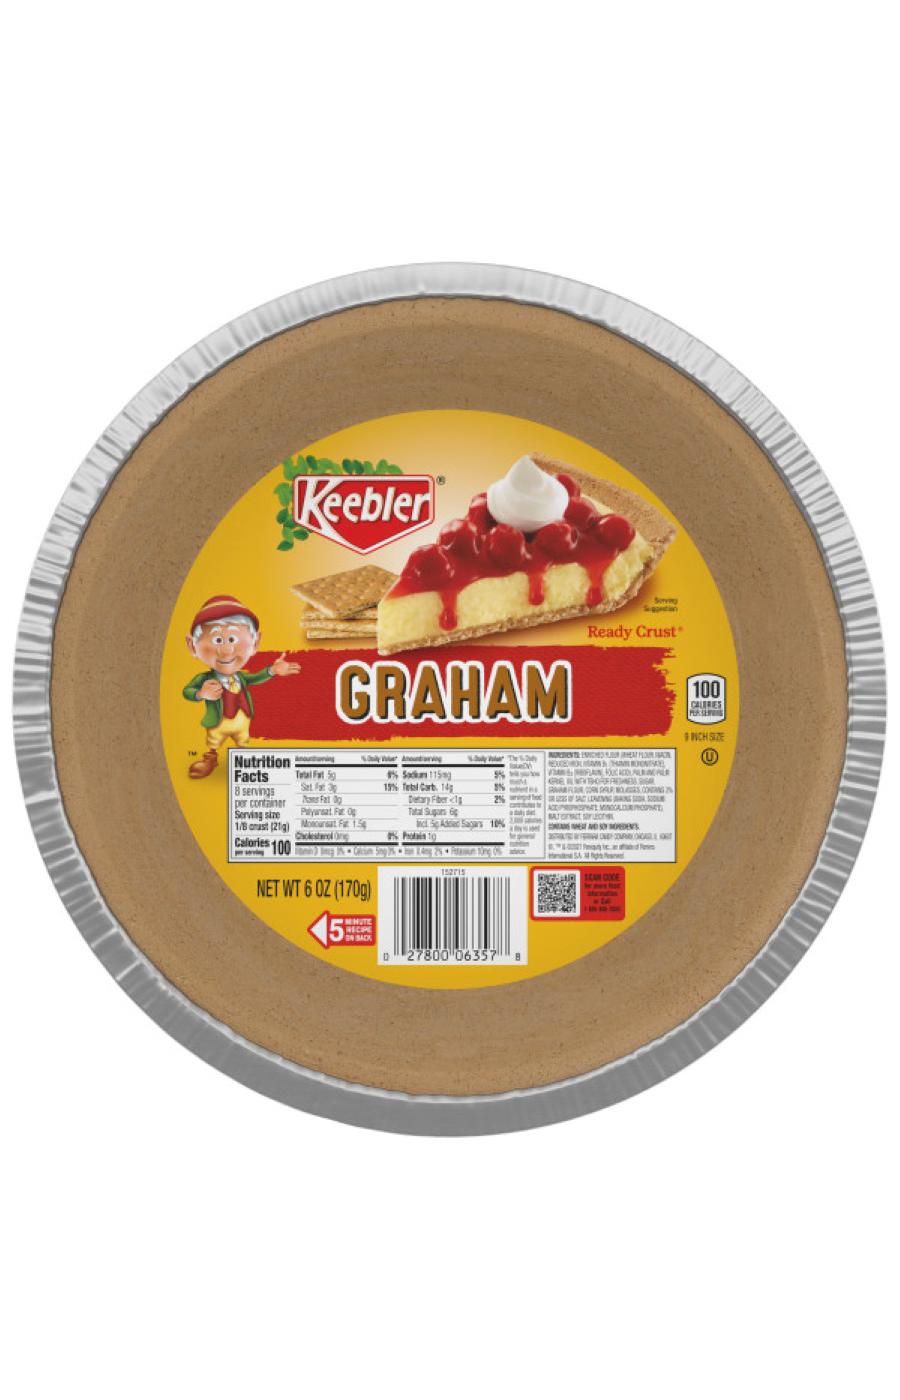 Keebler Graham Cracker Pie Crust; image 1 of 3